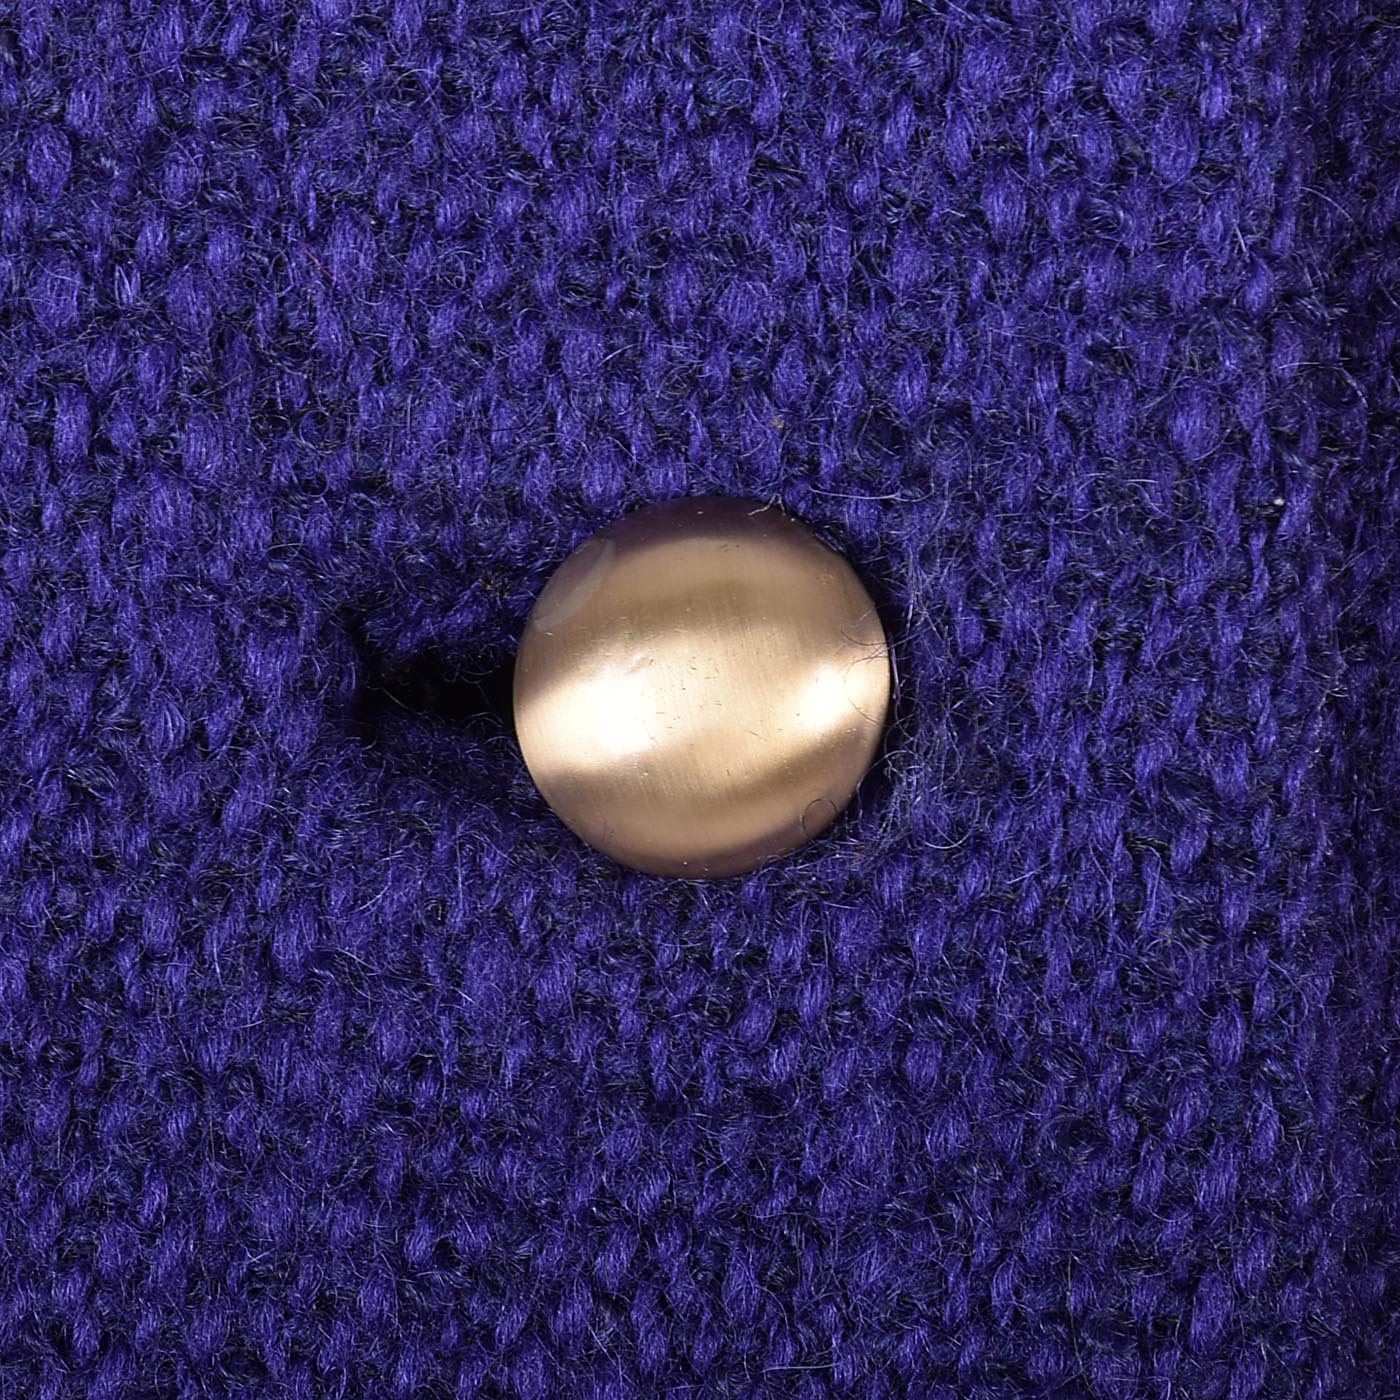 1960s Purple Tweed Coat